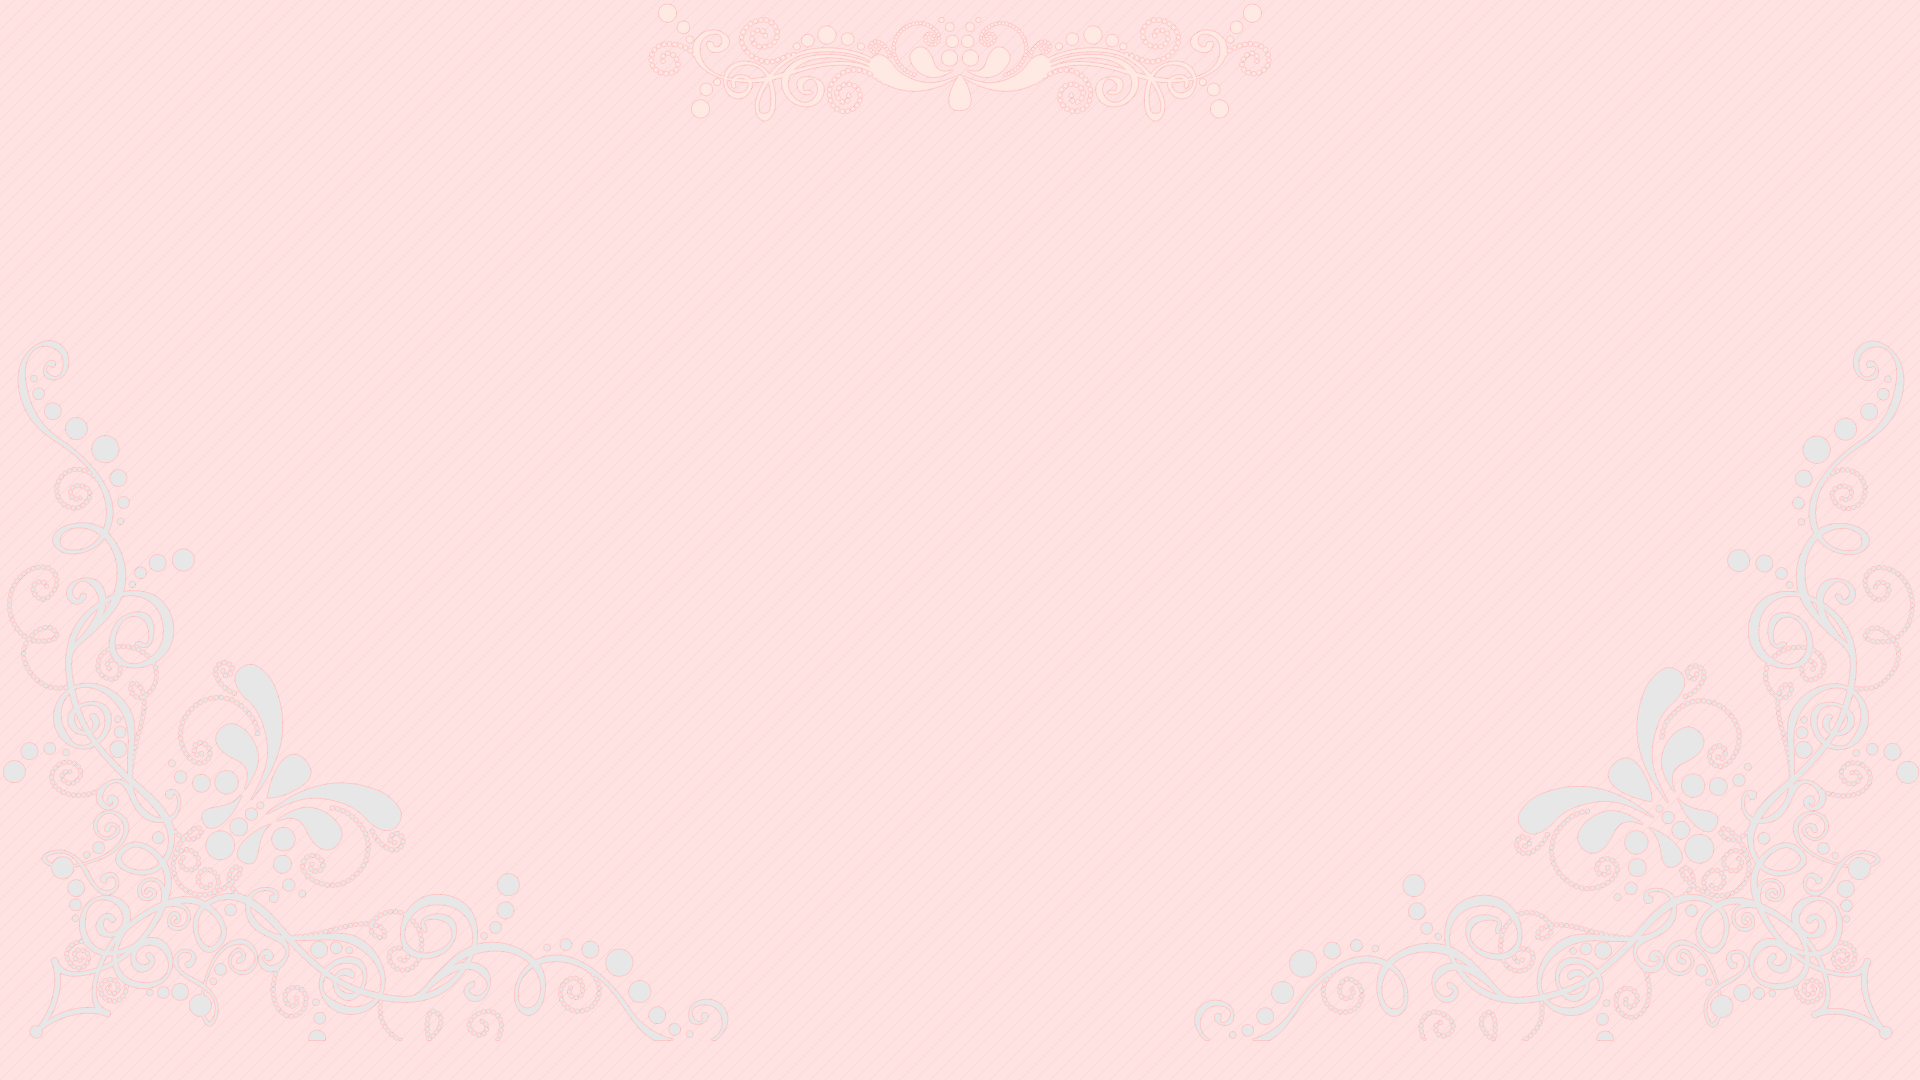 Pretty Pastel Pink Desktop Wallpaper By Cupcakekitten20 On